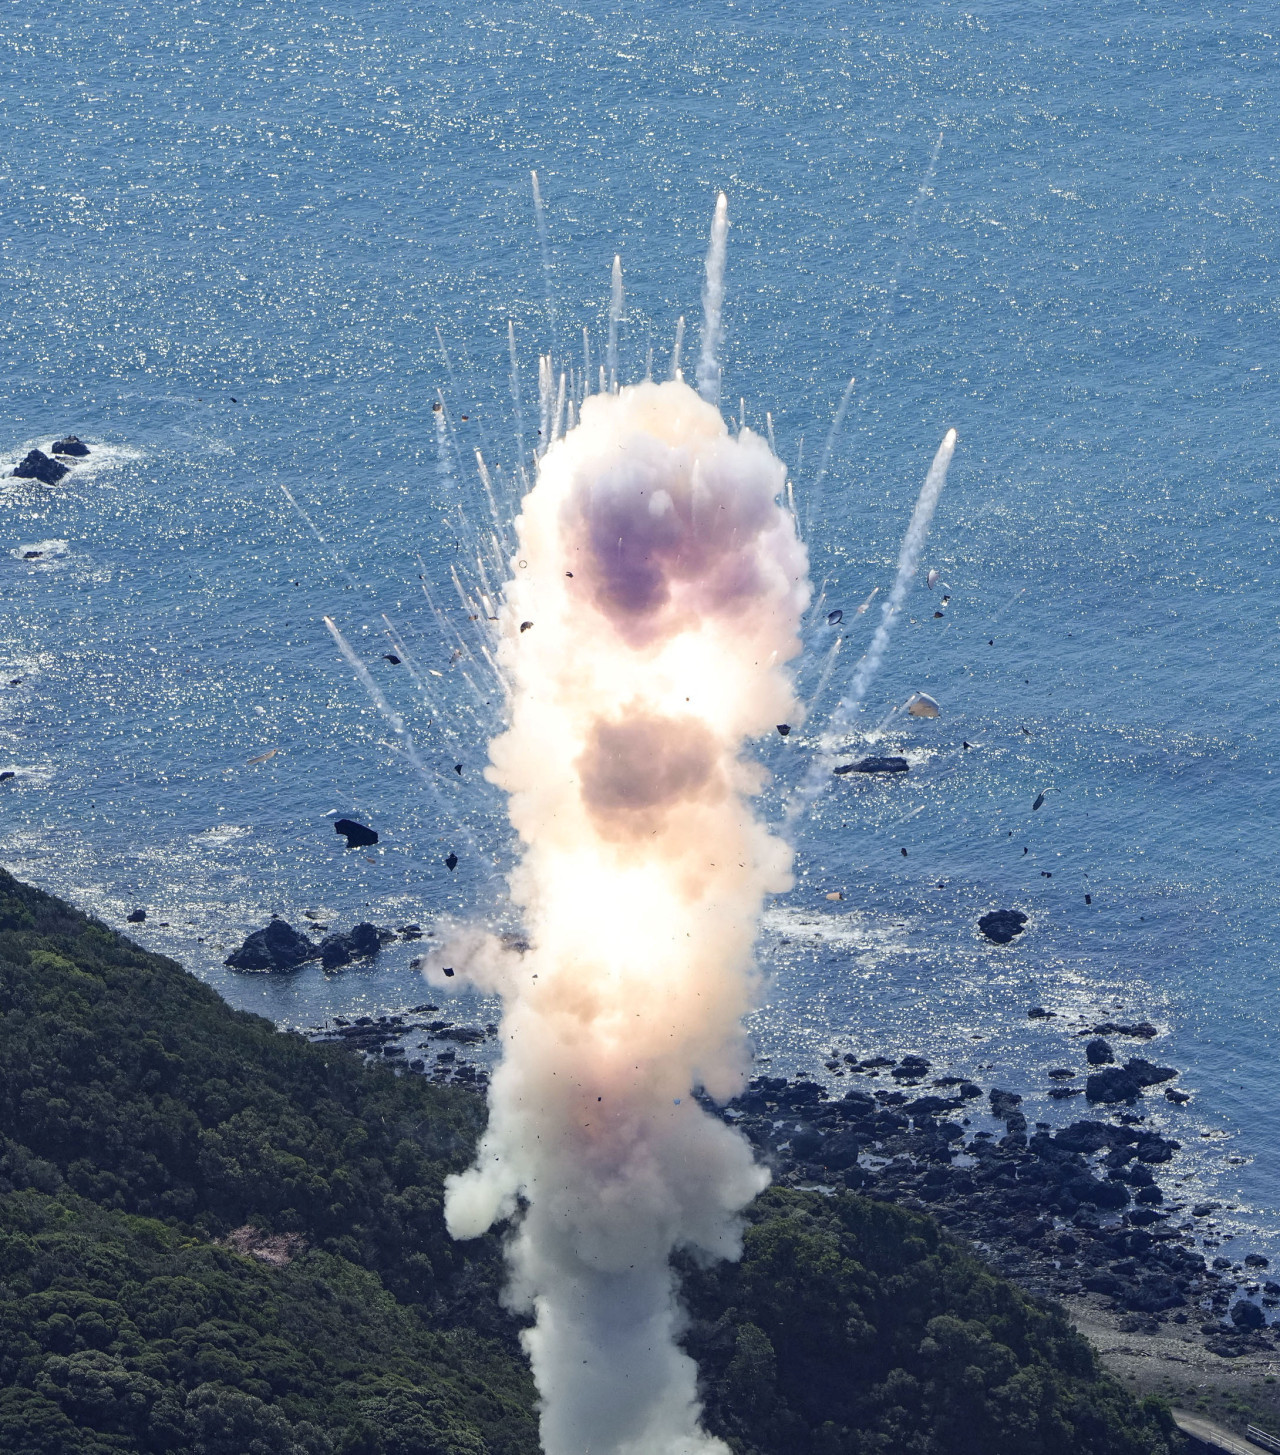 Explotó el cohete japonés Kairos en pleno lanzamiento. Foto: Reuters.